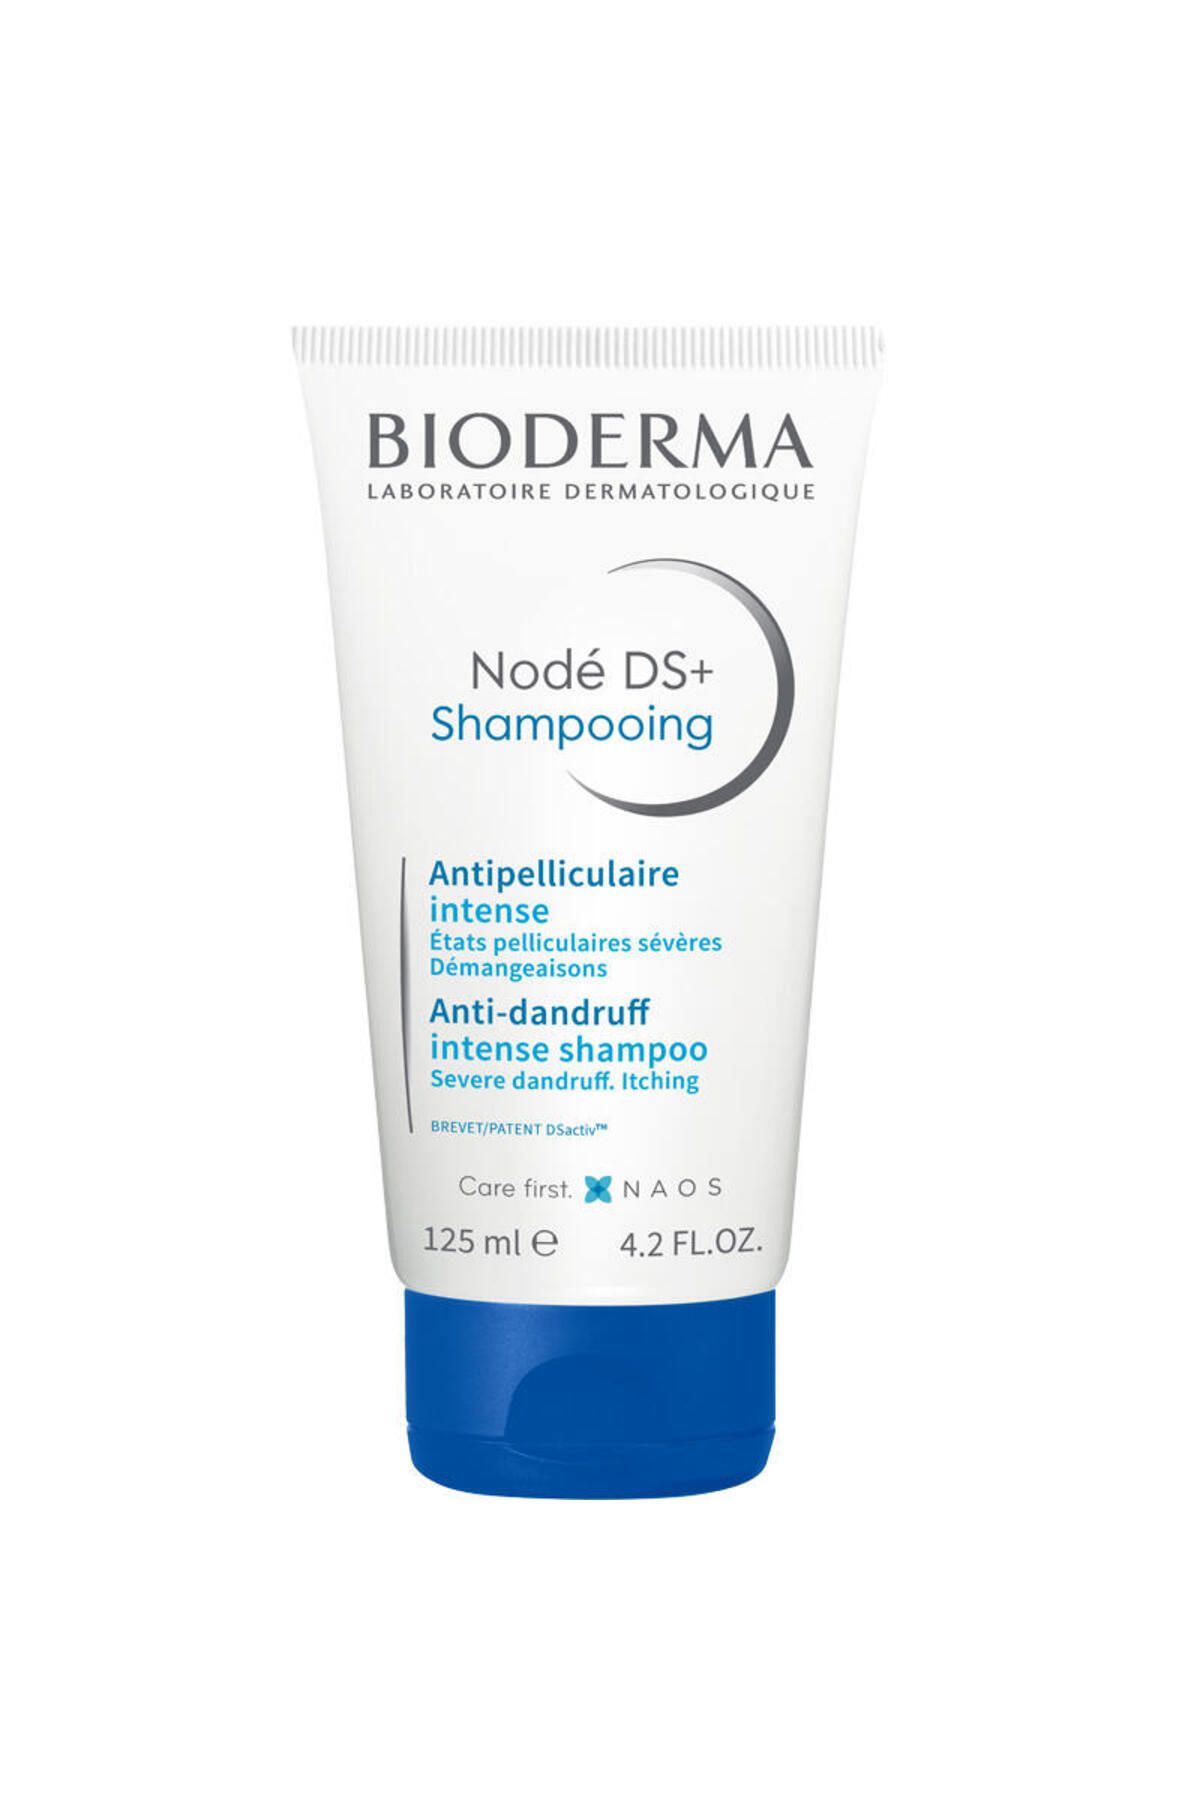 Bioderma Nodé DS+ Shampoo Tekrarlayan yağlı pullanma sorununa karşı deterjan içermeyen şampuan